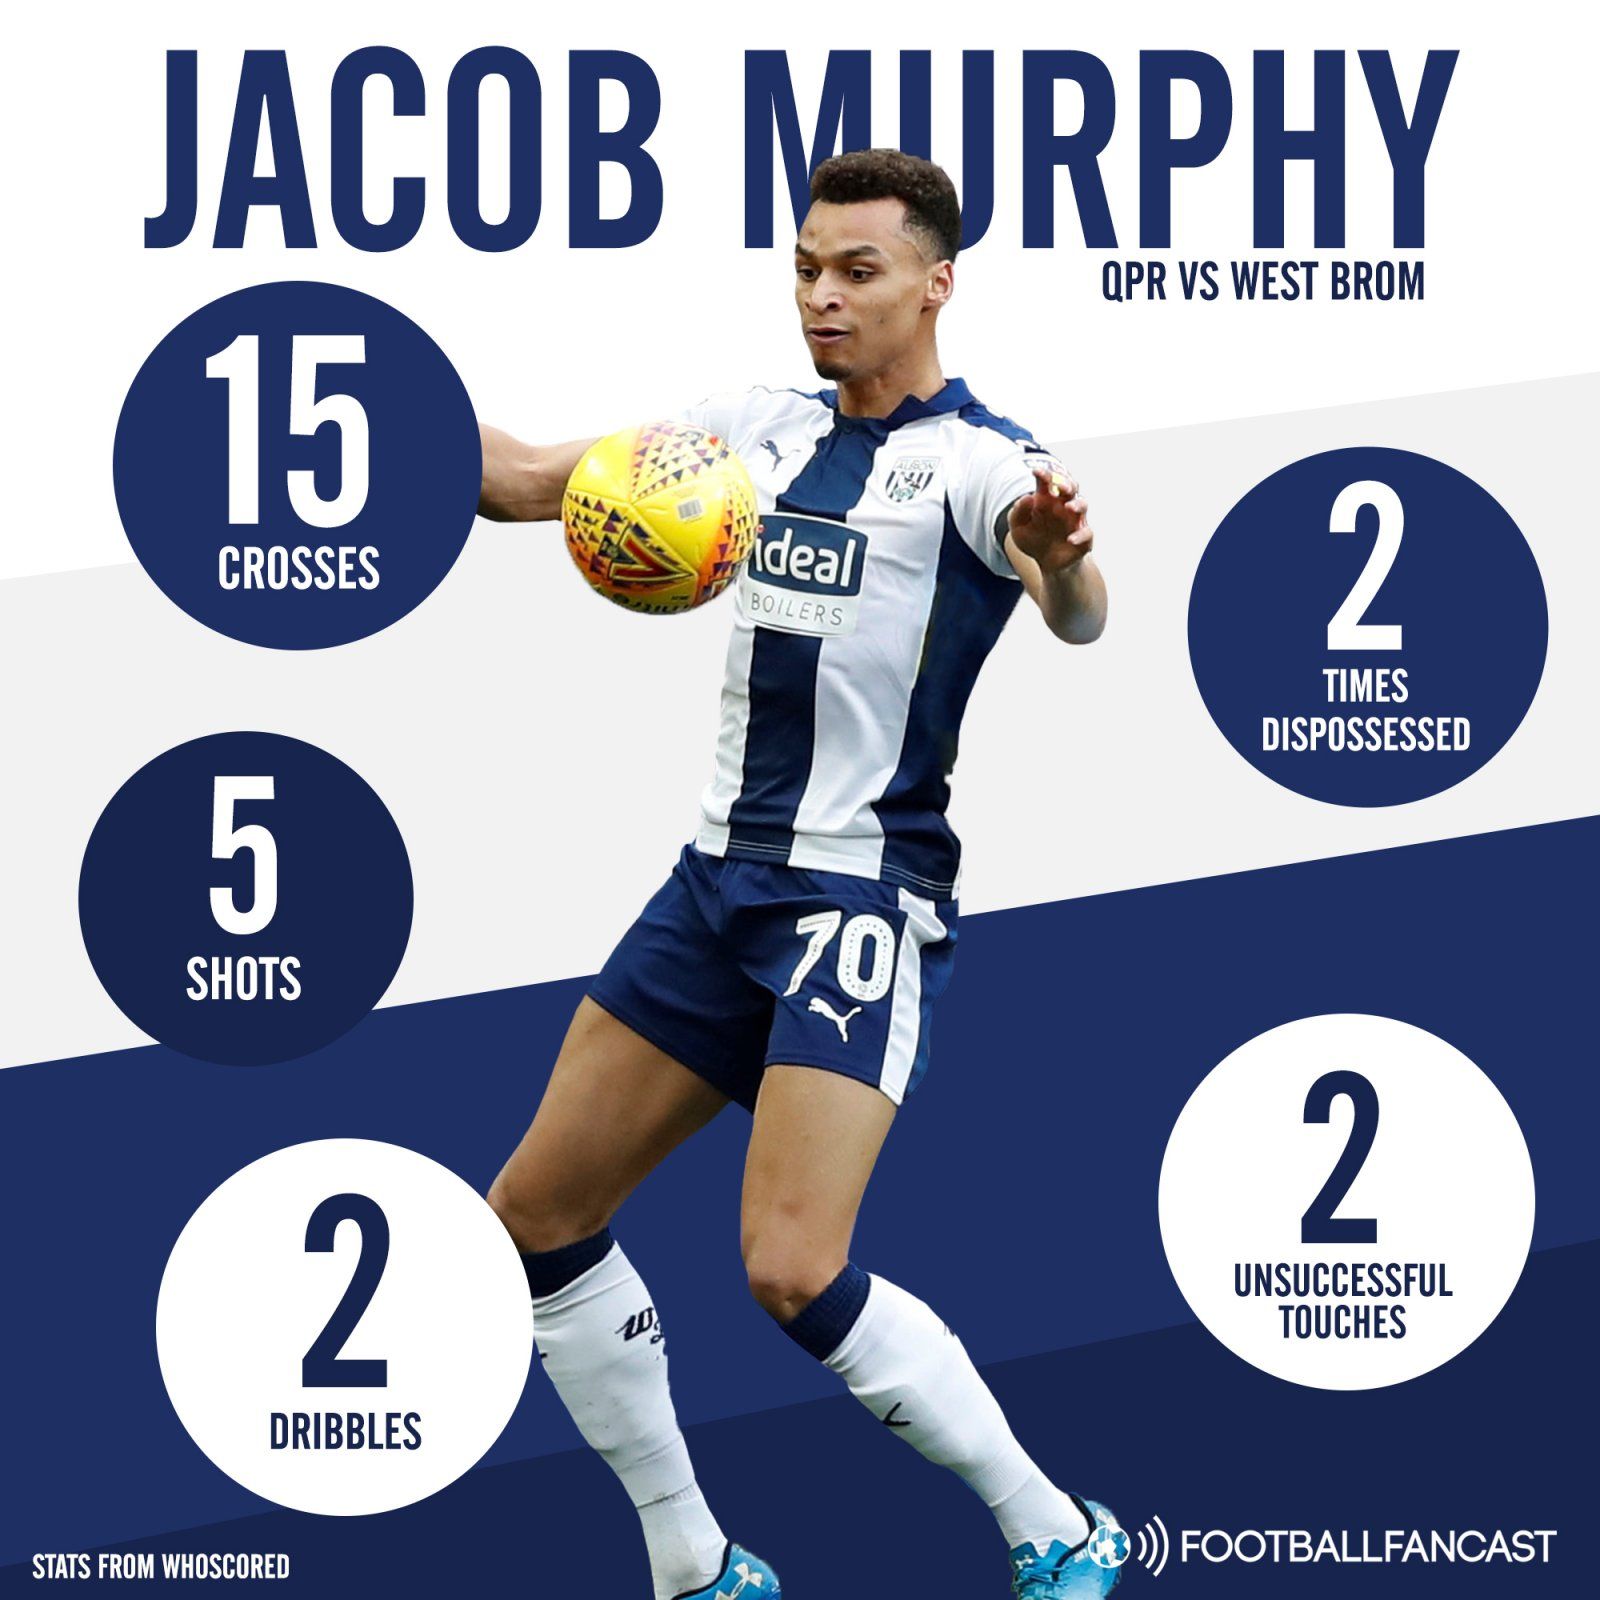 Jacob Murphy performance vs QPR